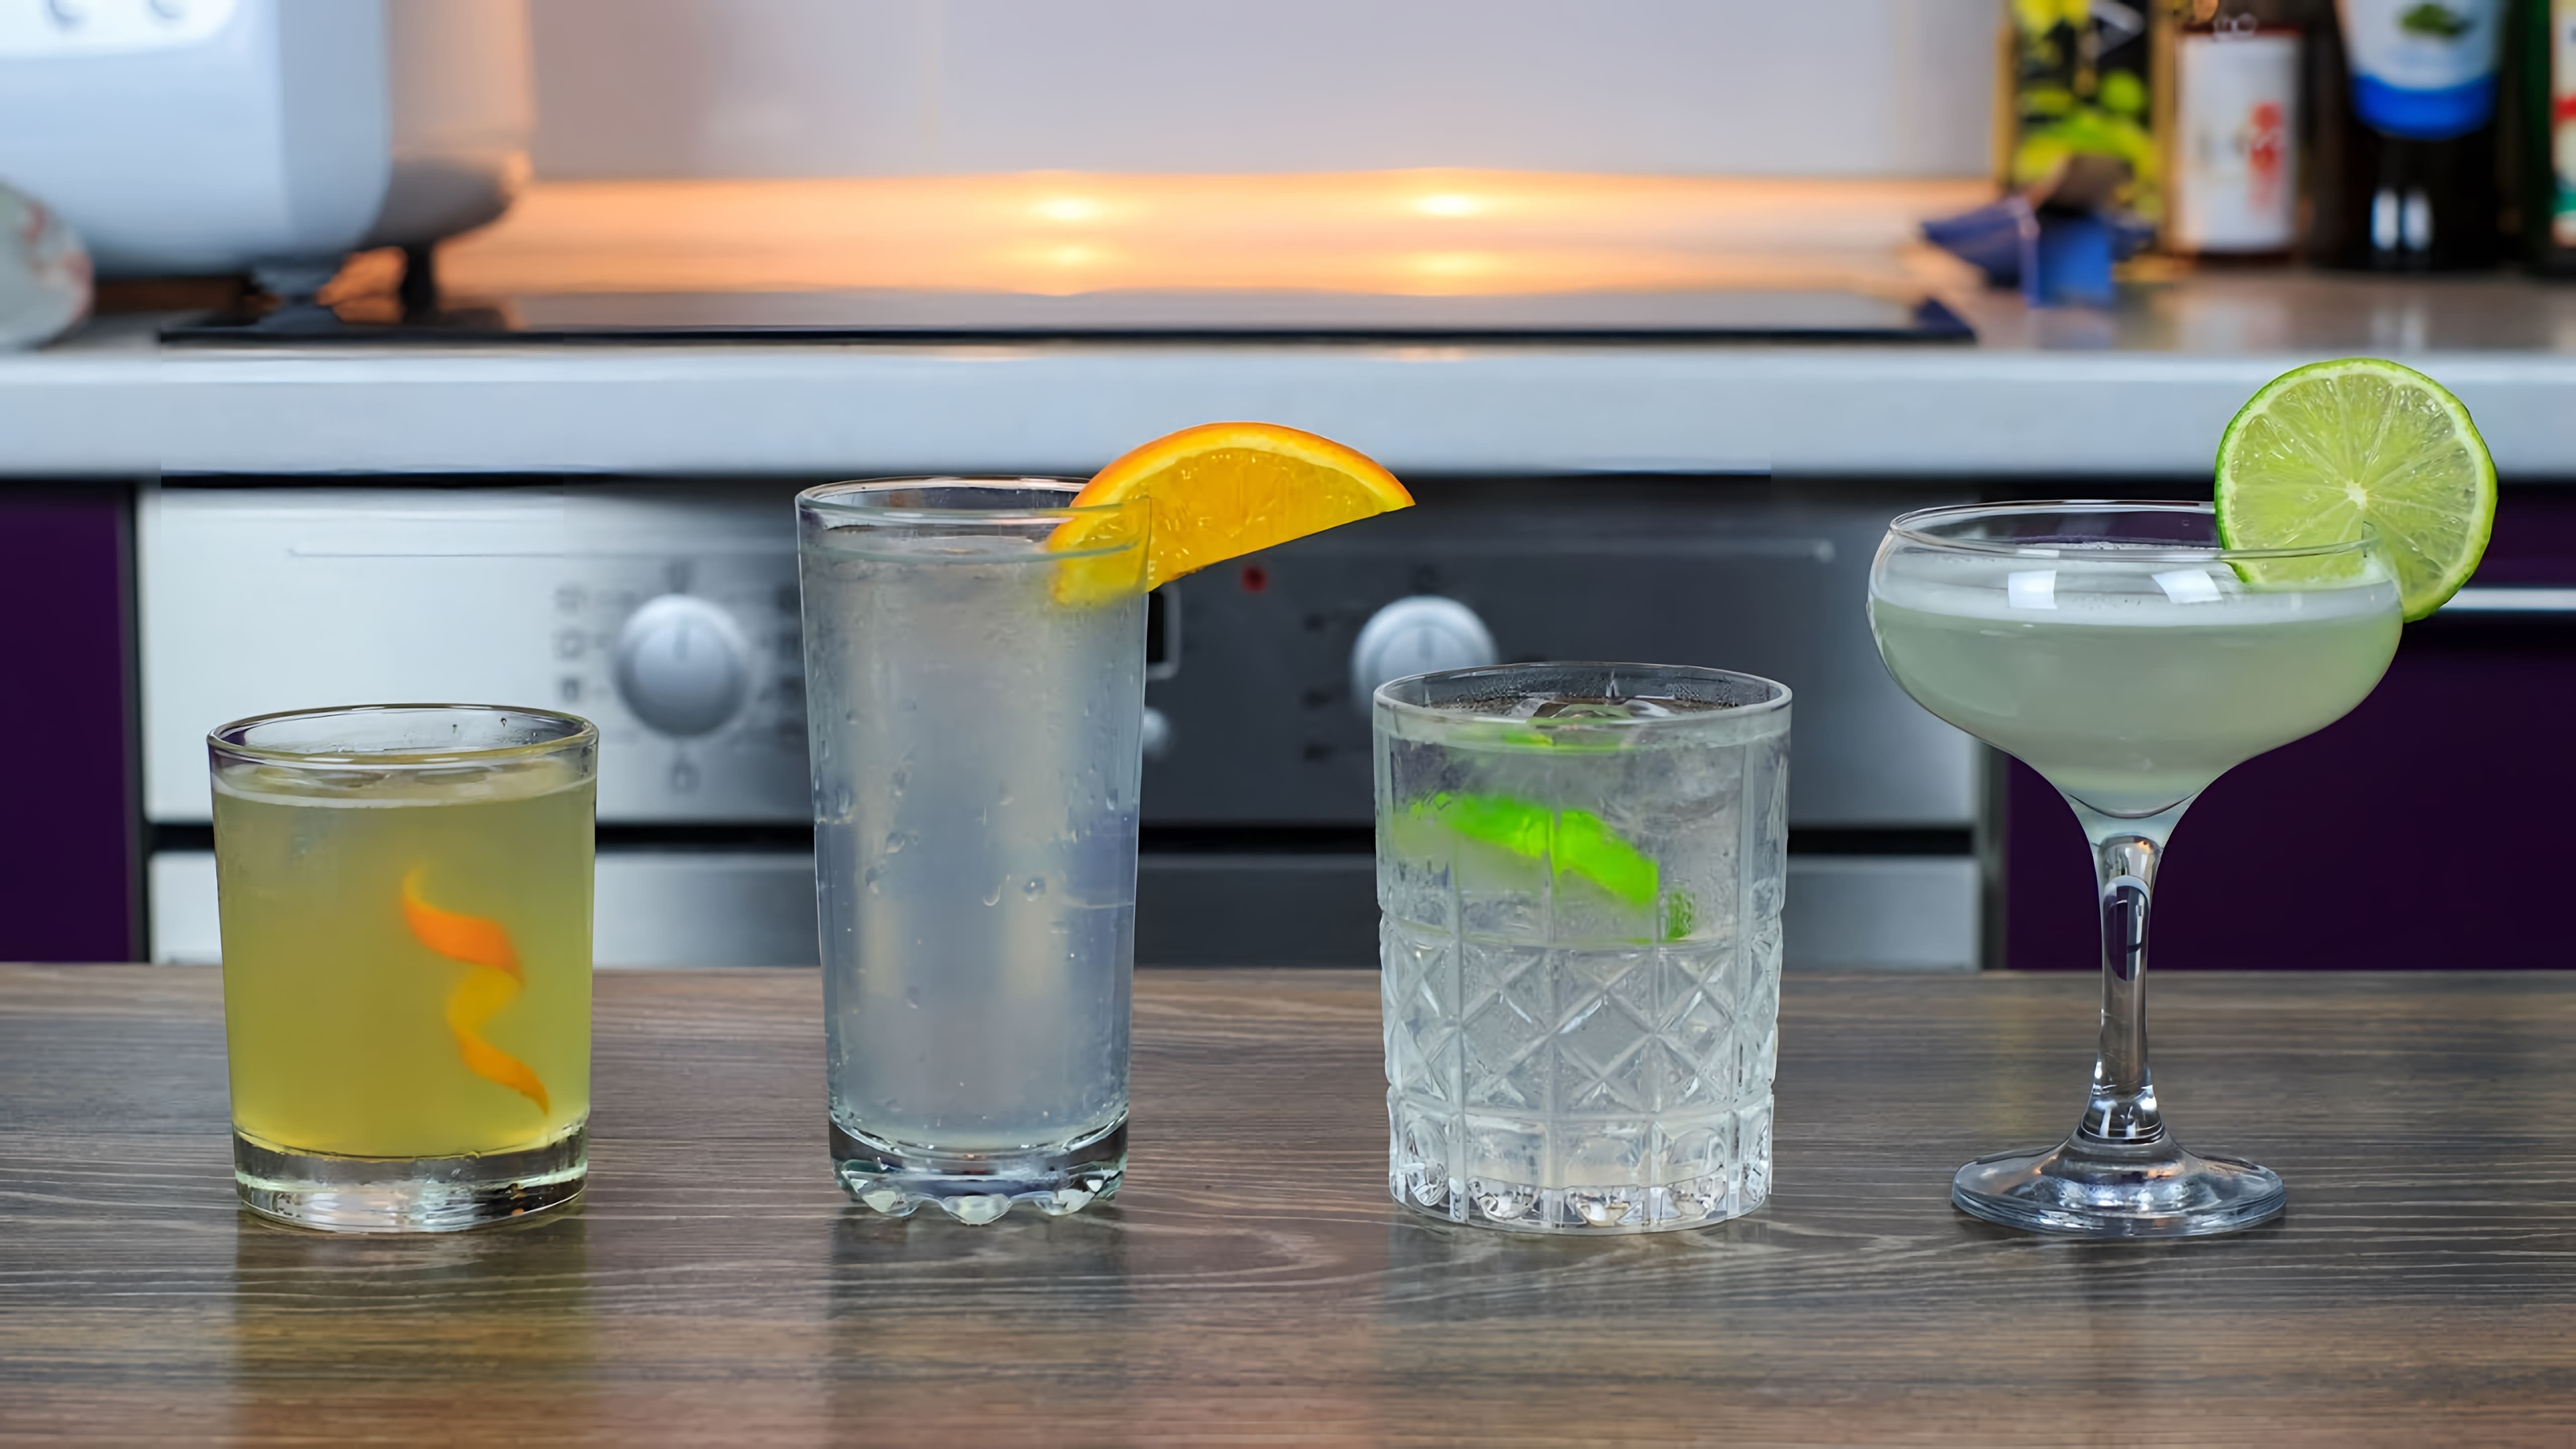 В этом видео показаны четыре простых коктейля с джином, которые можно приготовить в домашних условиях